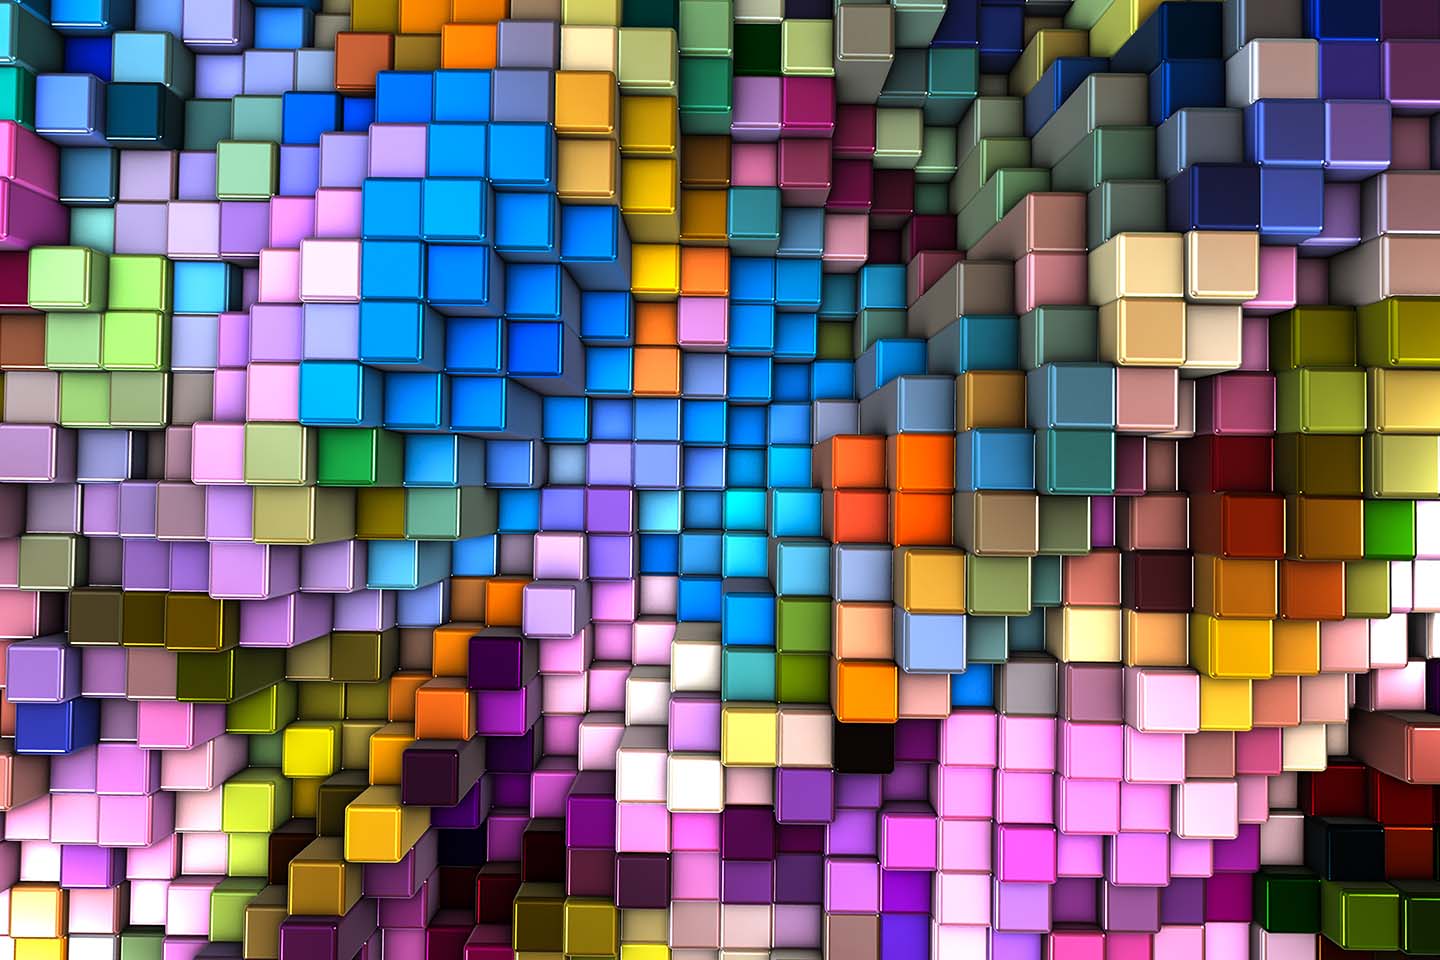 multi-colored 3-D cubes